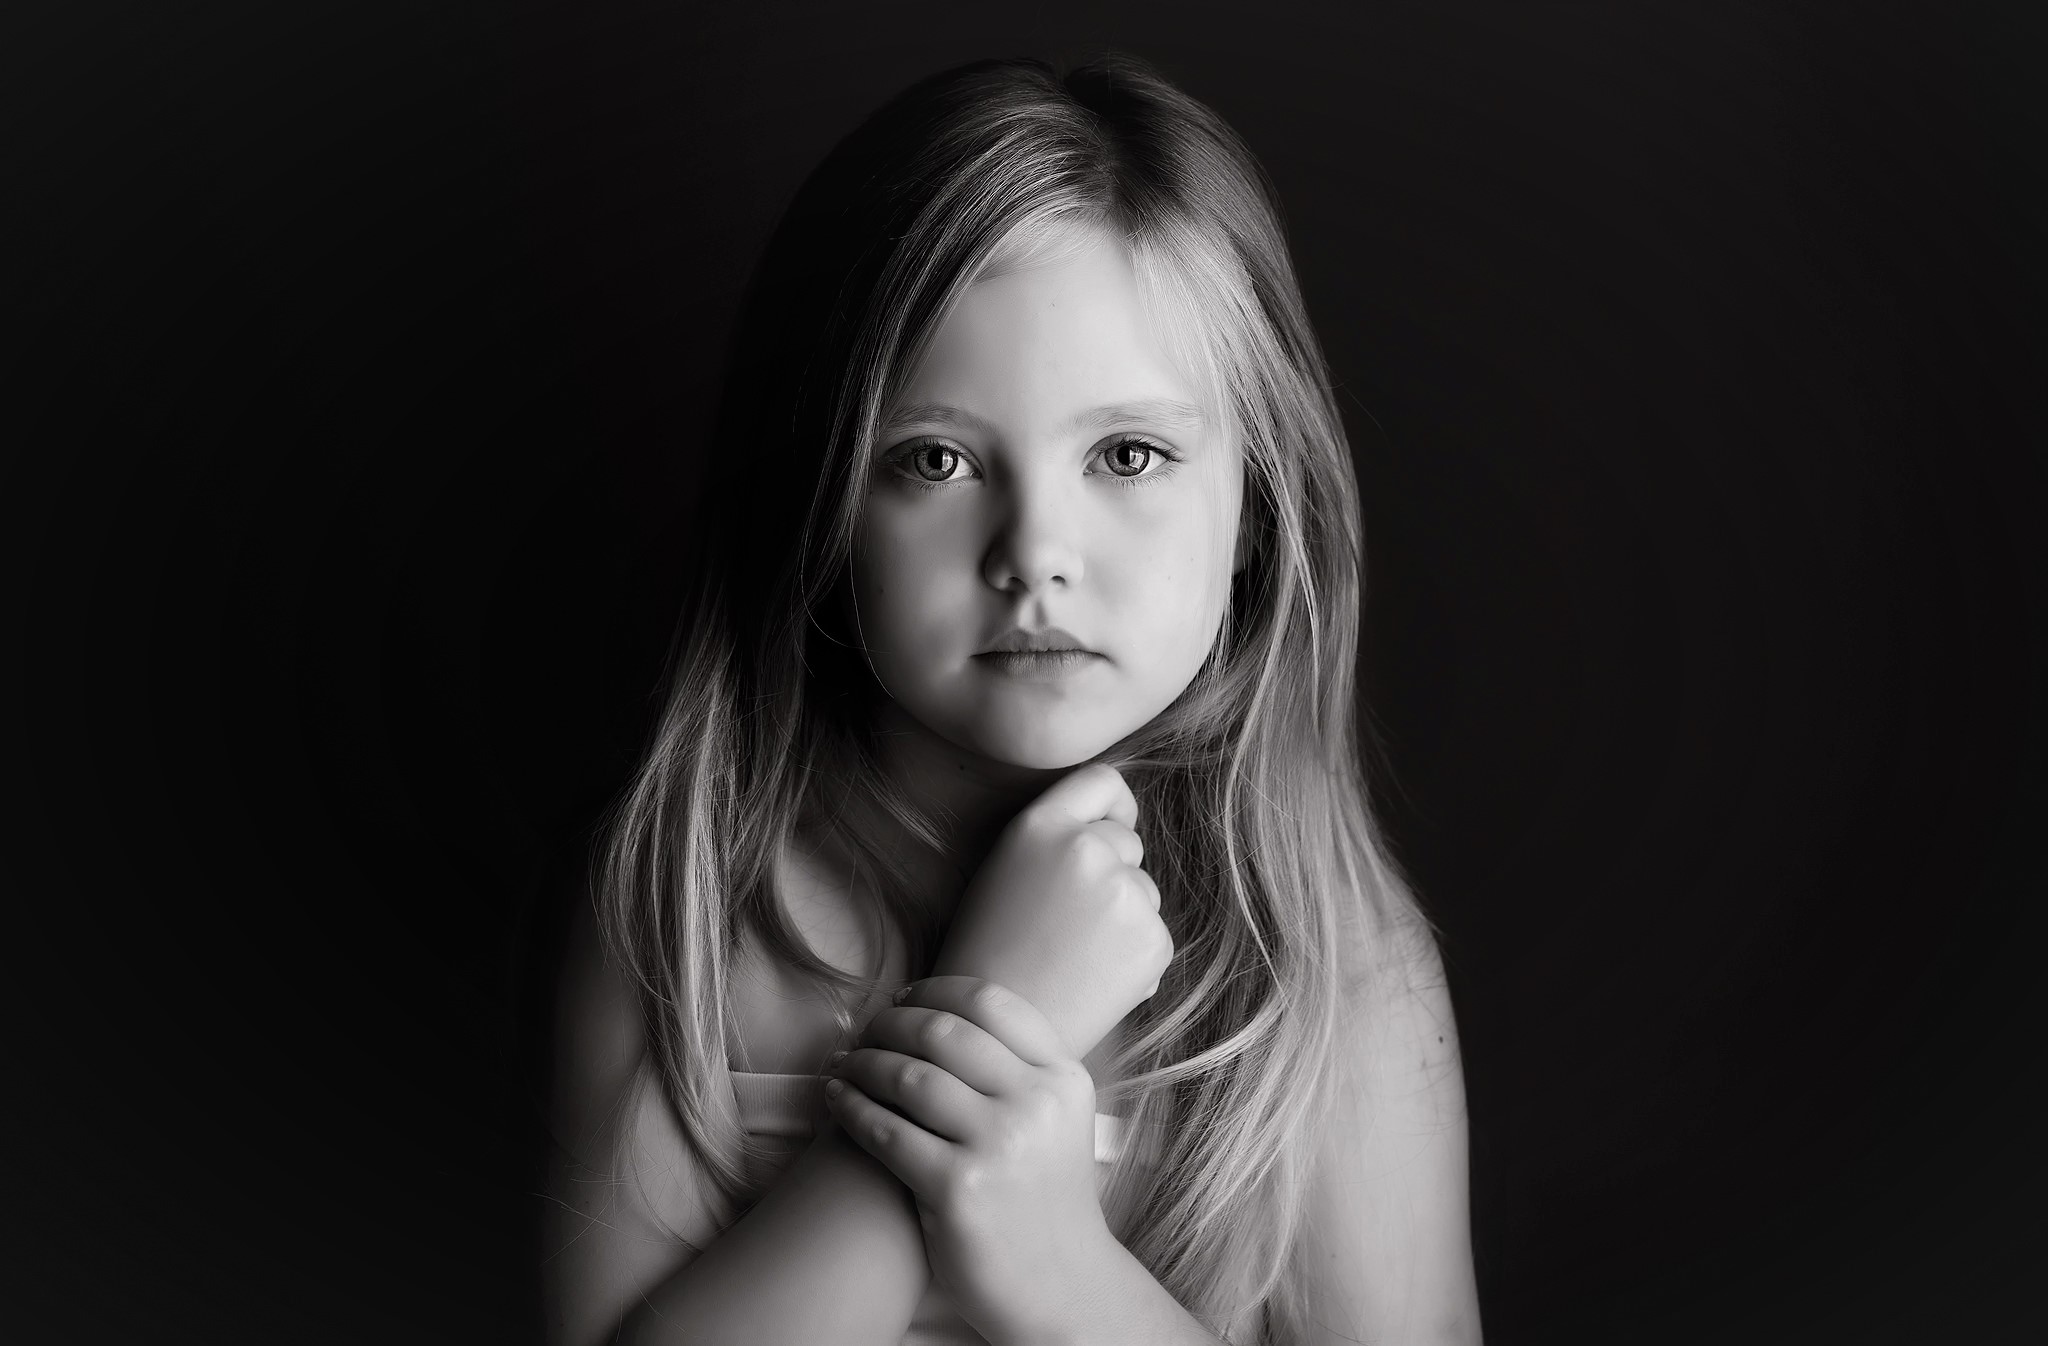 Little Girl Black And White - HD Wallpaper 